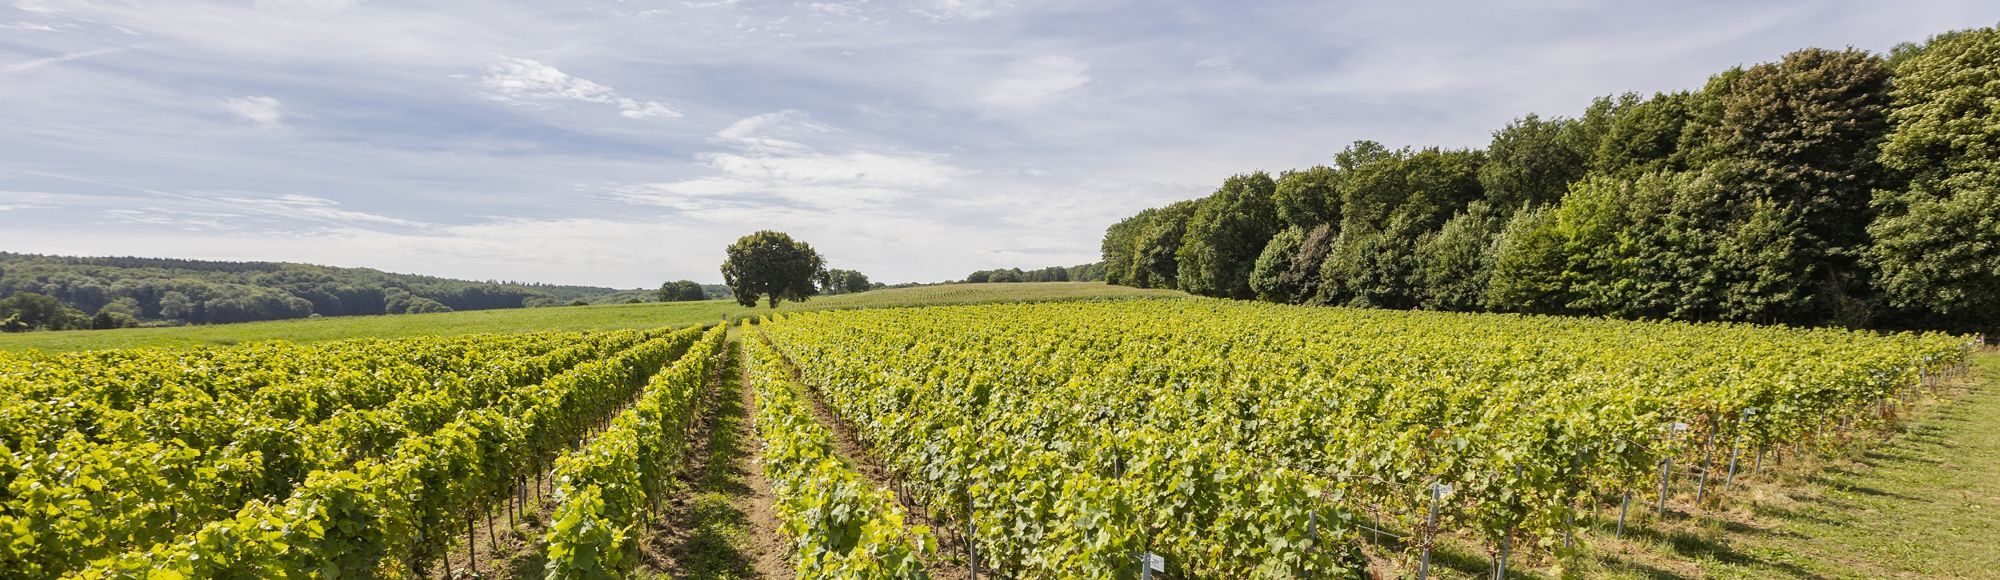 Uitzicht over de wijnranken van locatie Villare van St. Martinus 